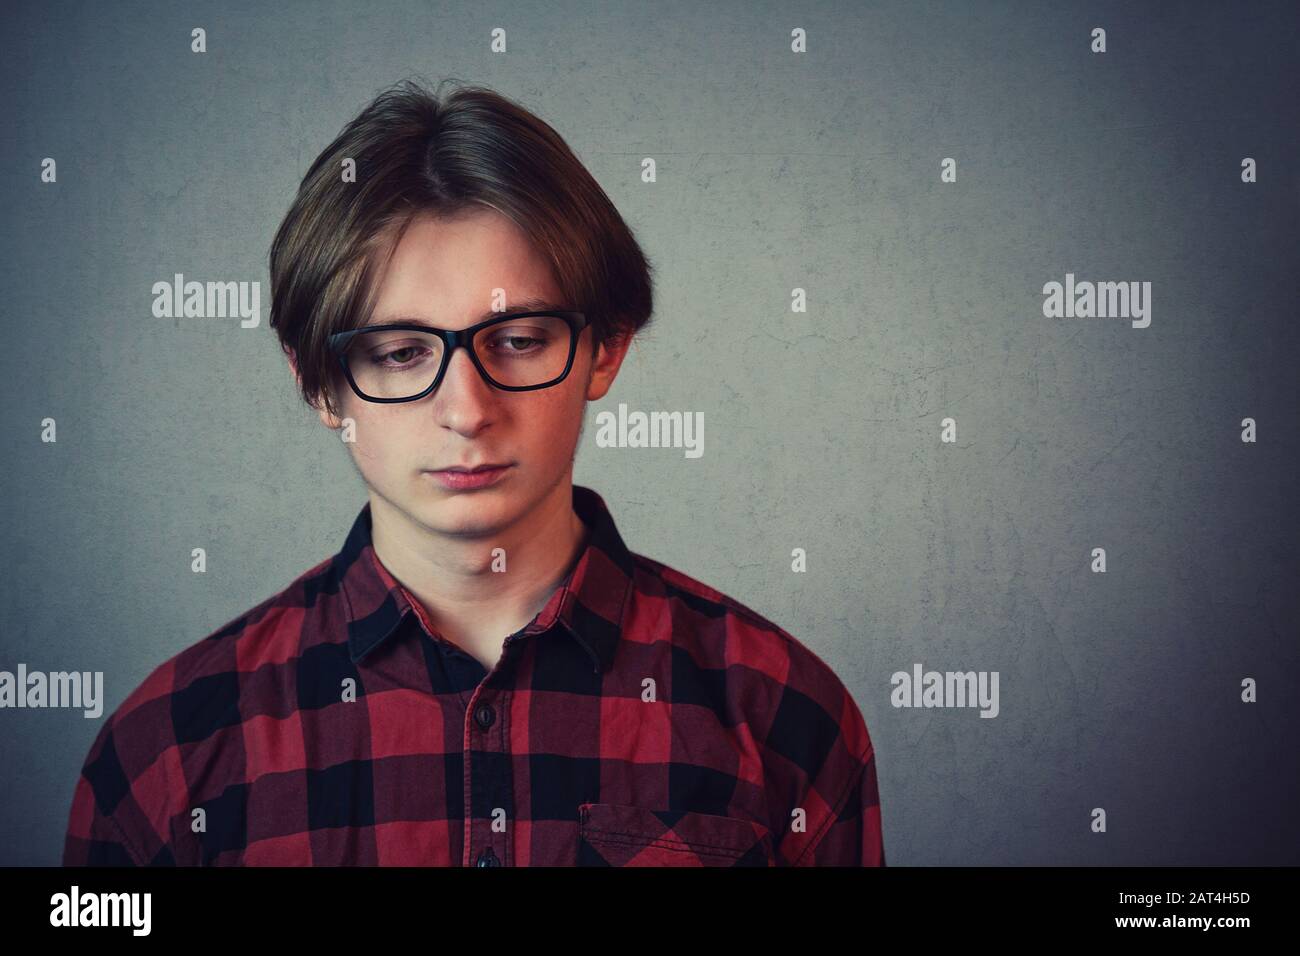 Triste e deluso ragazzo adolescente, indossando camicia rossa e occhiali, guardando verso il basso dispiaciuto isolato su sfondo grigio parete. Foto Stock